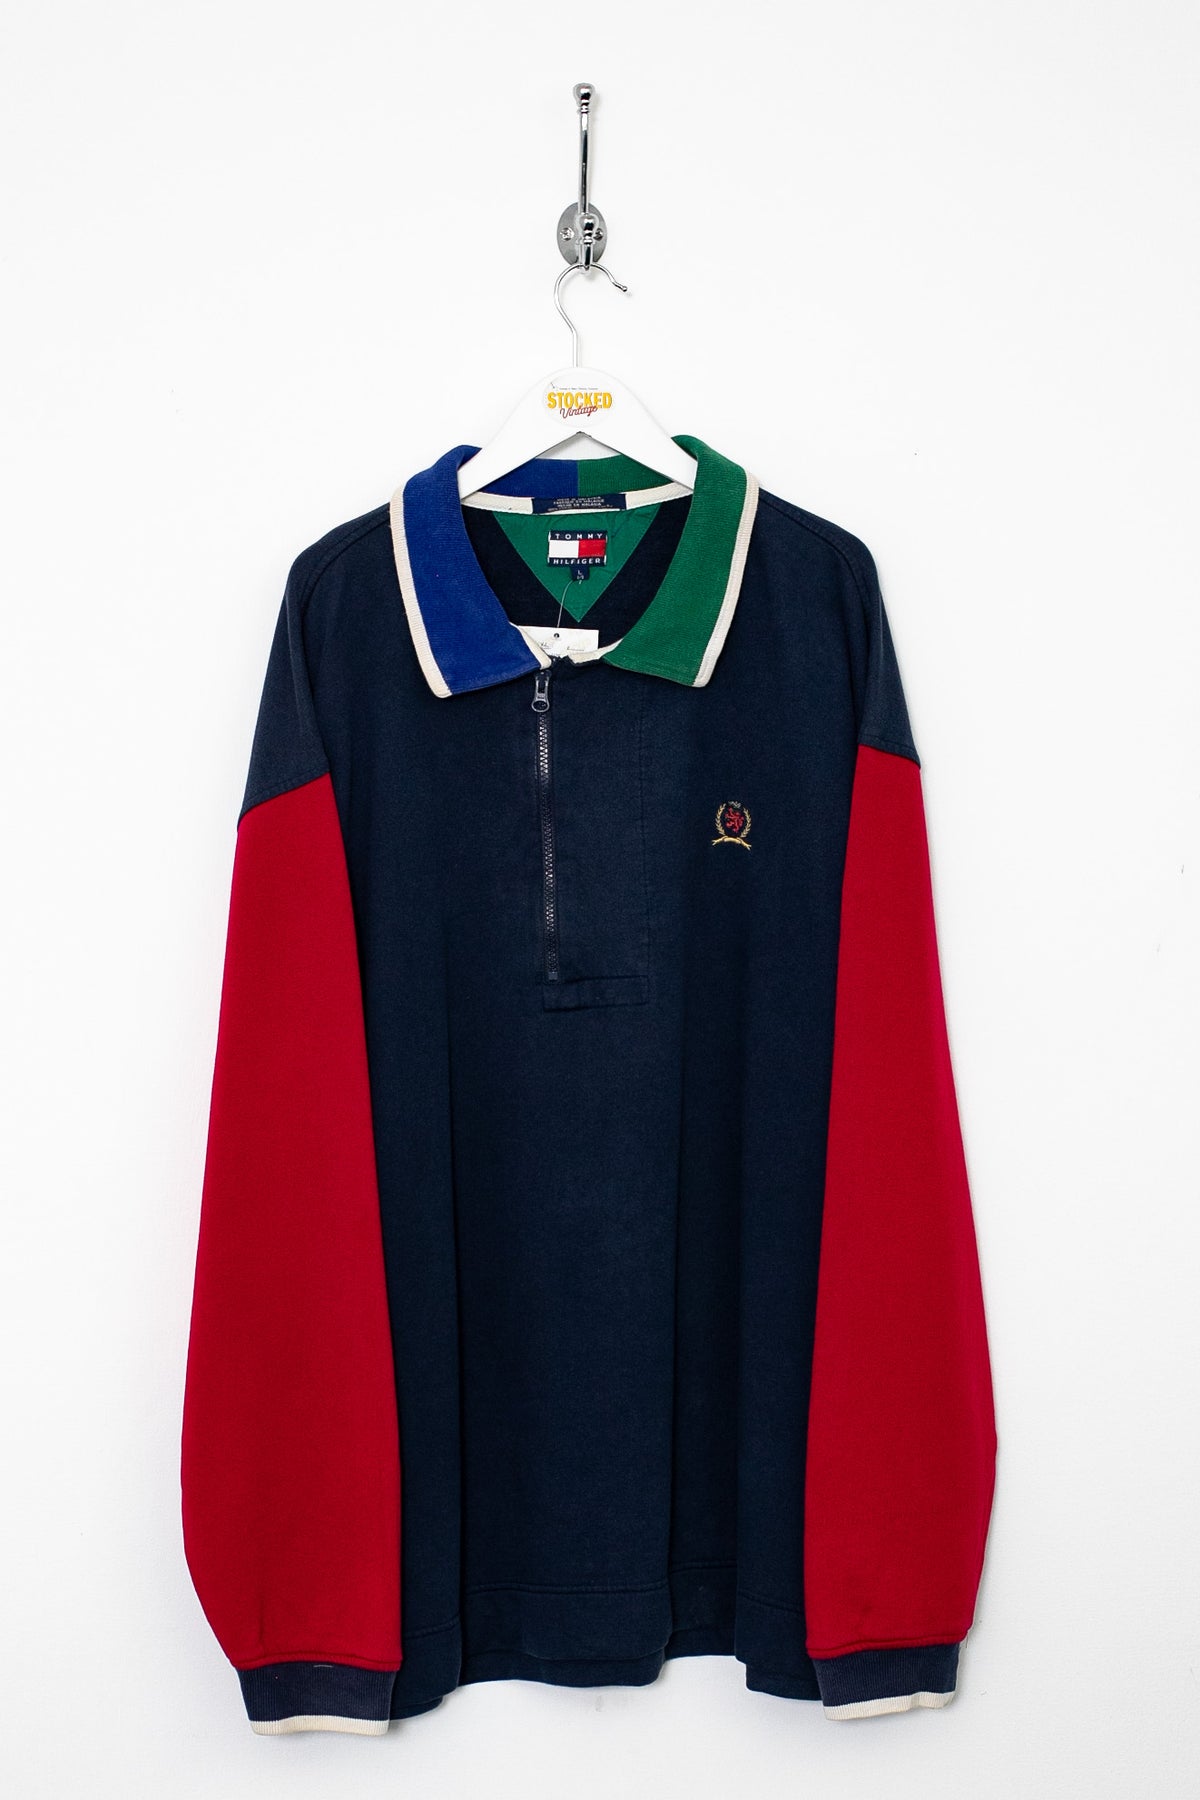 90s Tommy Hilfiger 1/4 Zip Sweatshirt (XL)